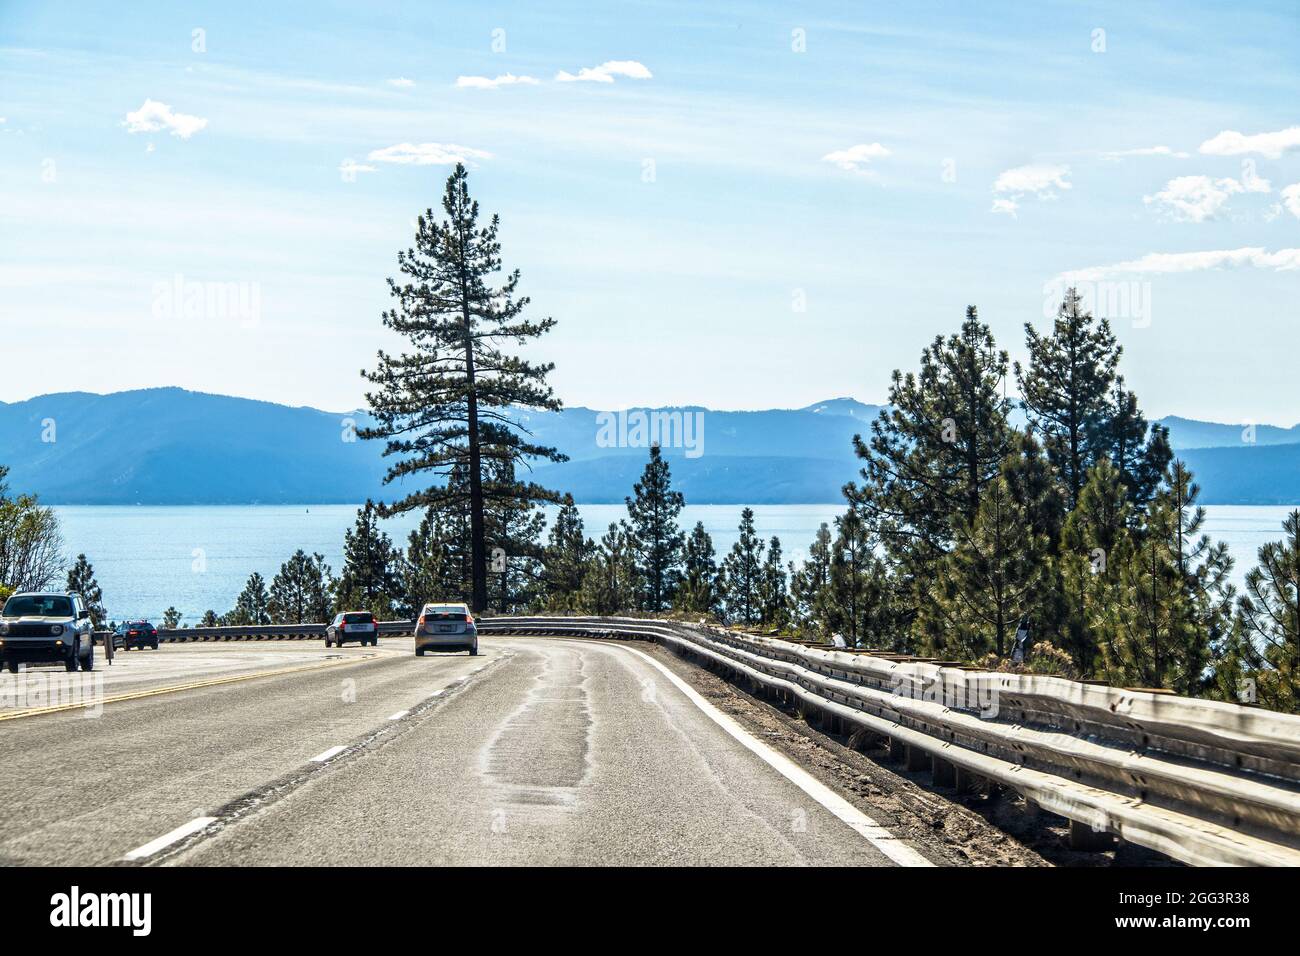 Veicoli che circondano una curva con una barriera di guardia martoriata vicino al lago Tahloe CA Stati Uniti d'America con lago e montagne in lontananza. Foto Stock